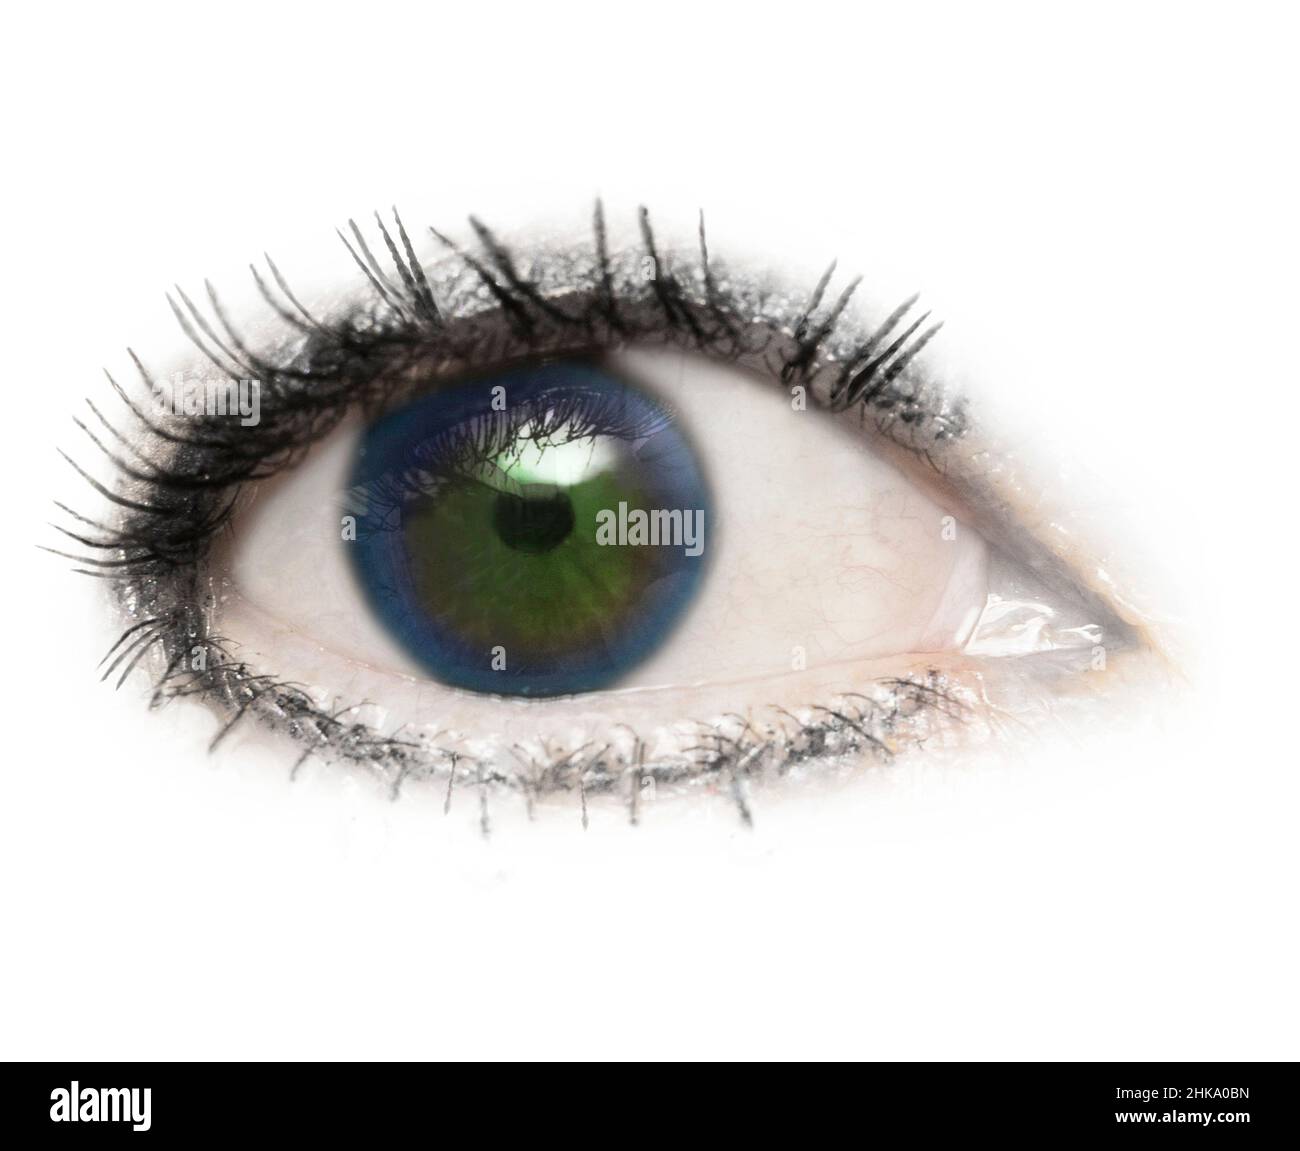 Un oeil, un globe oculaire, deux couleurs bleu et vert, isolé avec des cils sur un fond blanc.Hétérochromie partielle.Paupière,pupille,sclère,iris. Banque D'Images